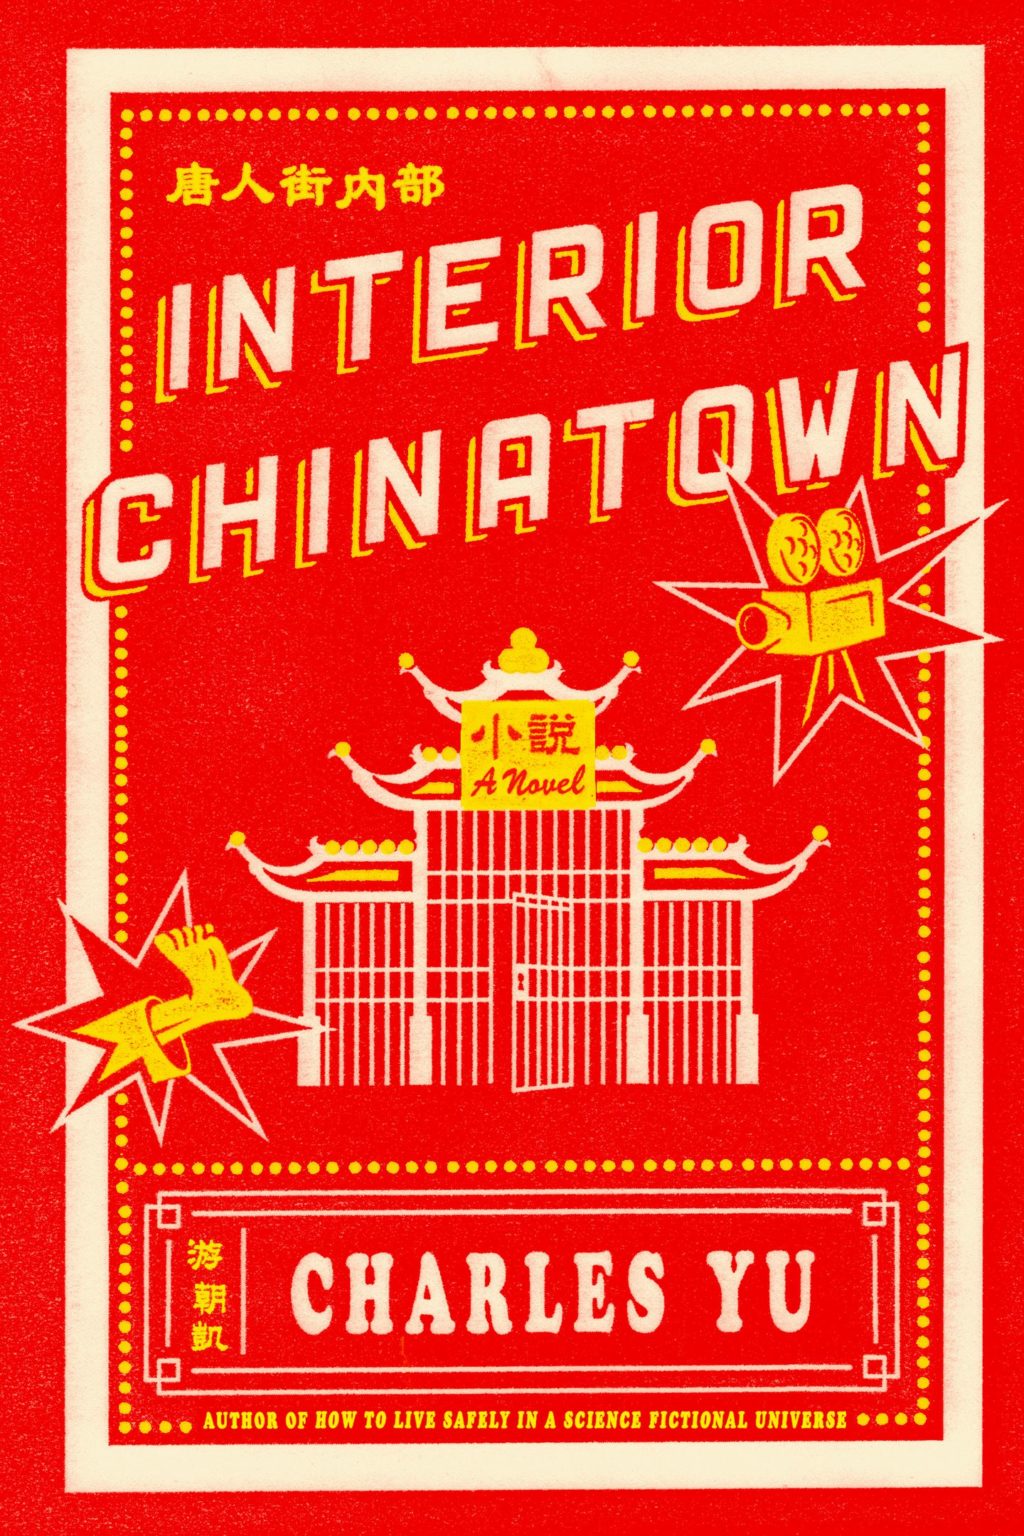 the interior chinatown